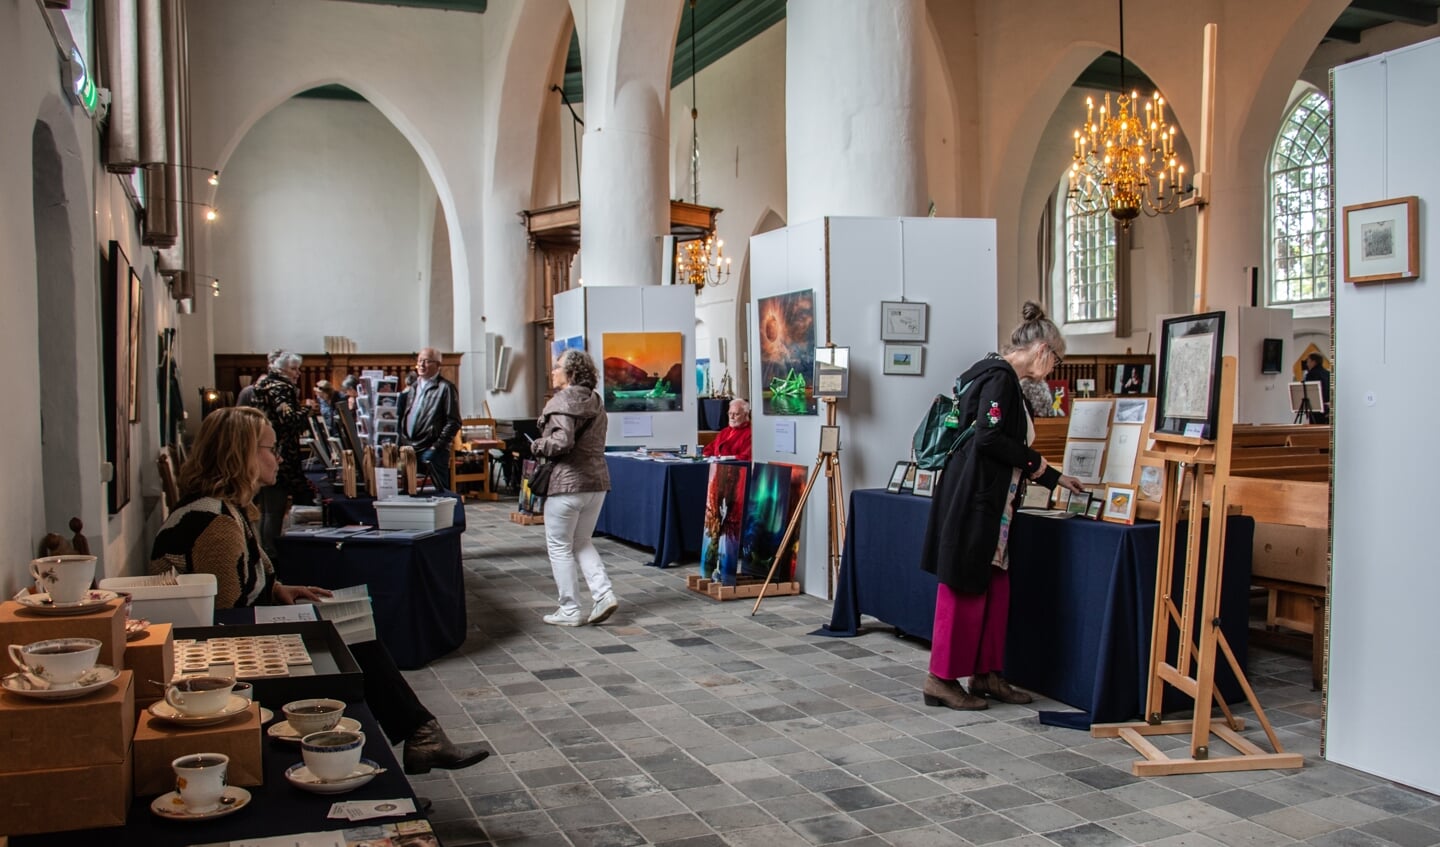 Meerdere kunstenaars exposeren in de Remigiuskerk in Steenderen. Foto: Liesbeth Spaansen 